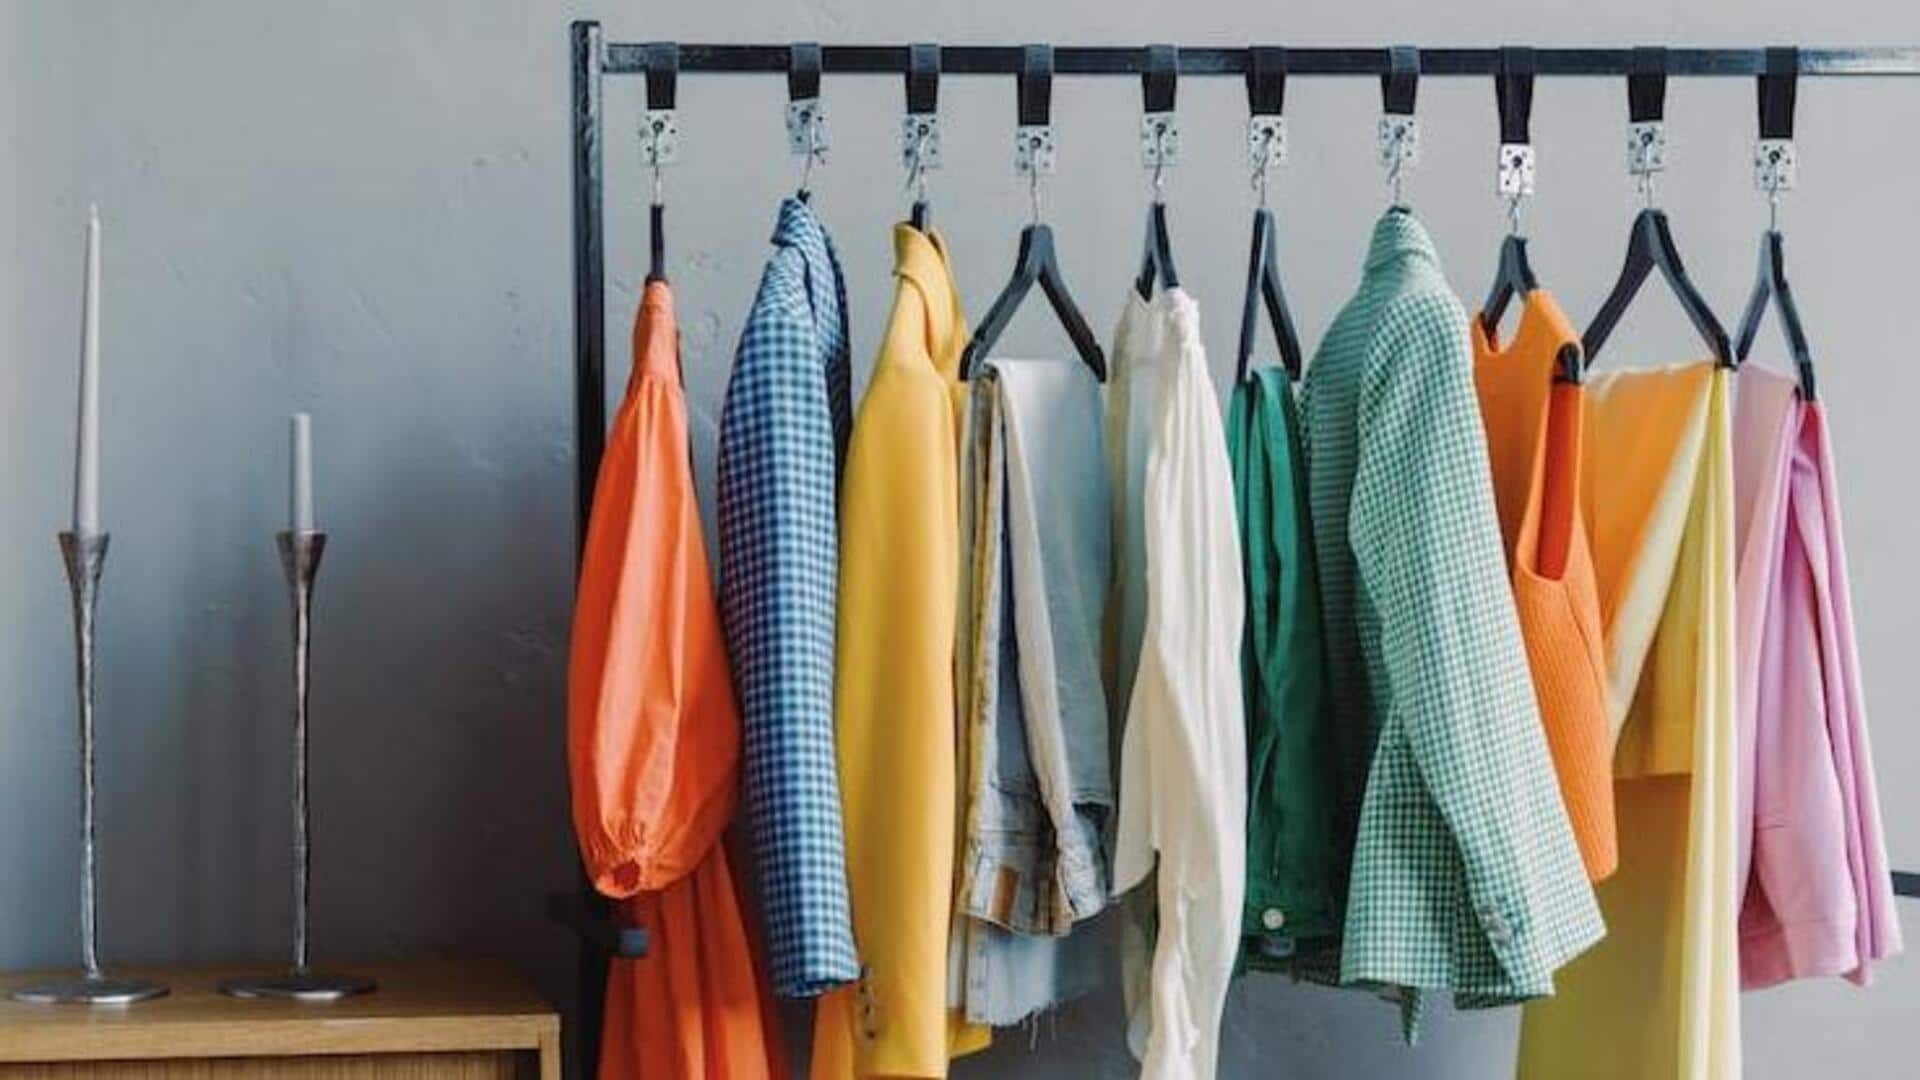 Capsule wardrobe: Where minimalistic fashion weds sustainability